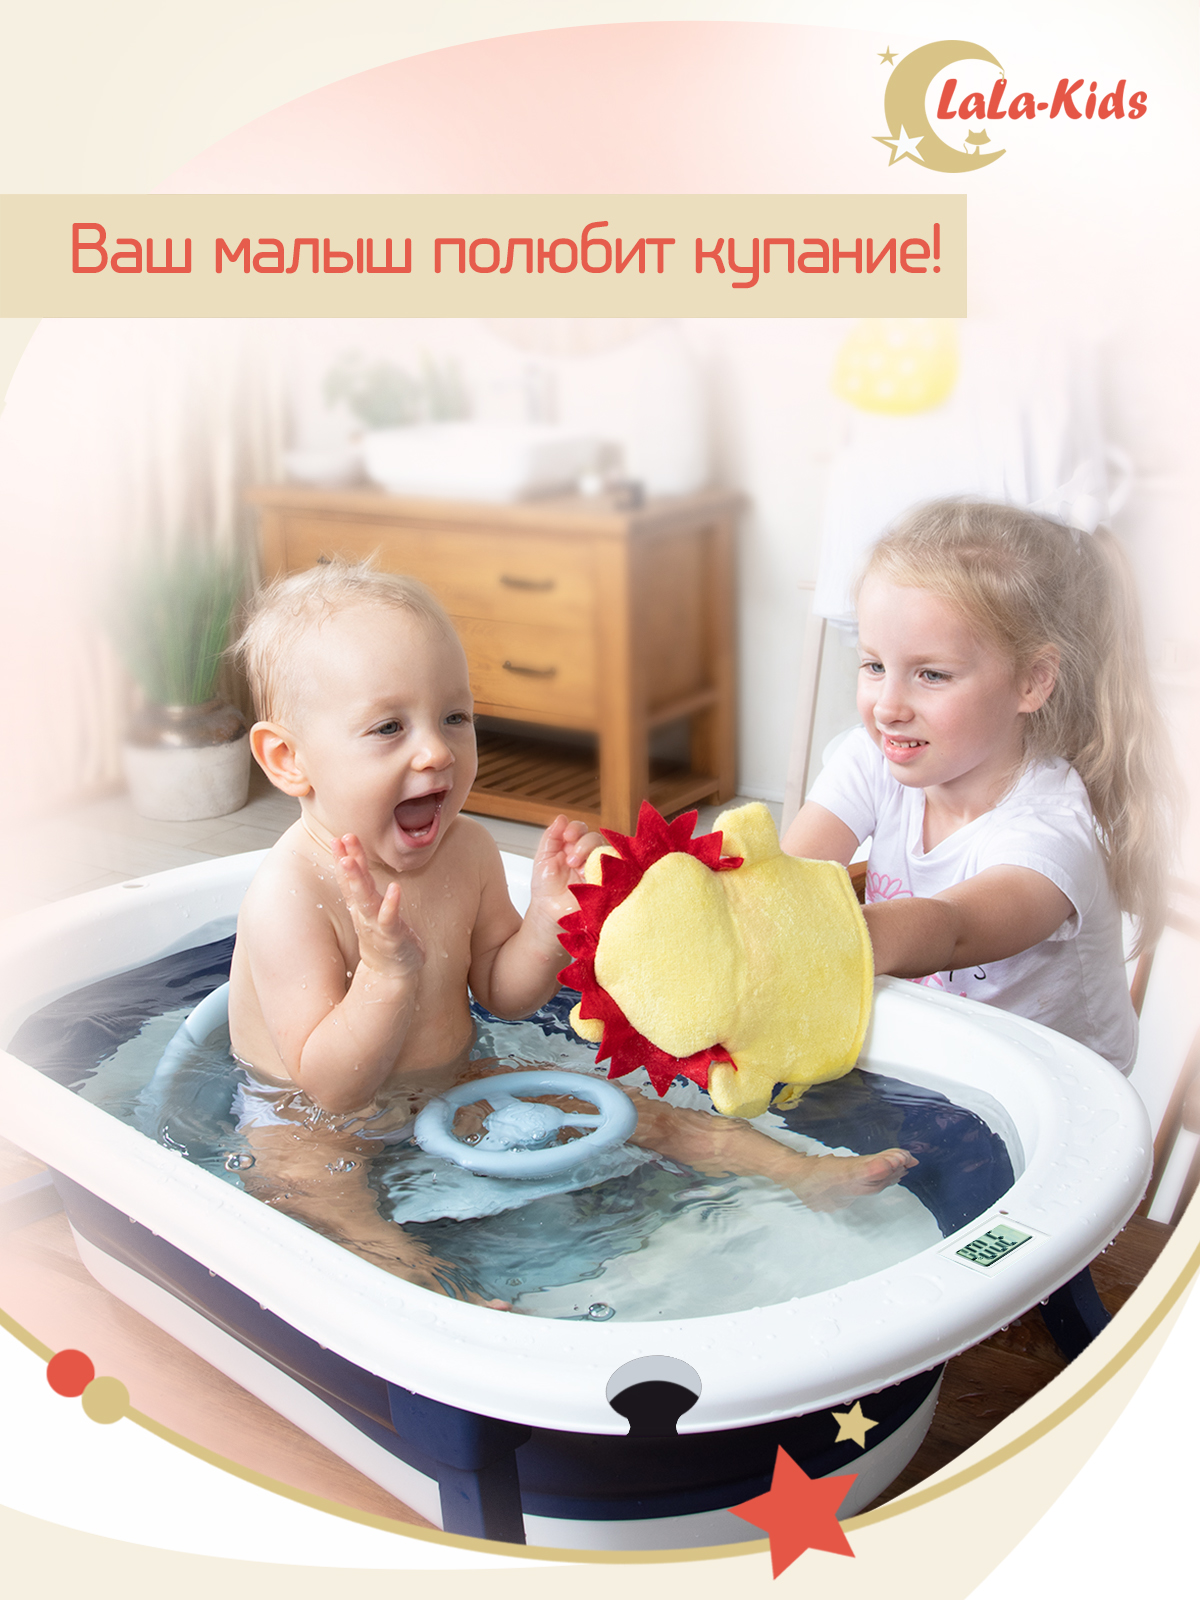 Ванночка для купания LaLa-Kids новорожденных складная с матрасиком и термометром - фото 22